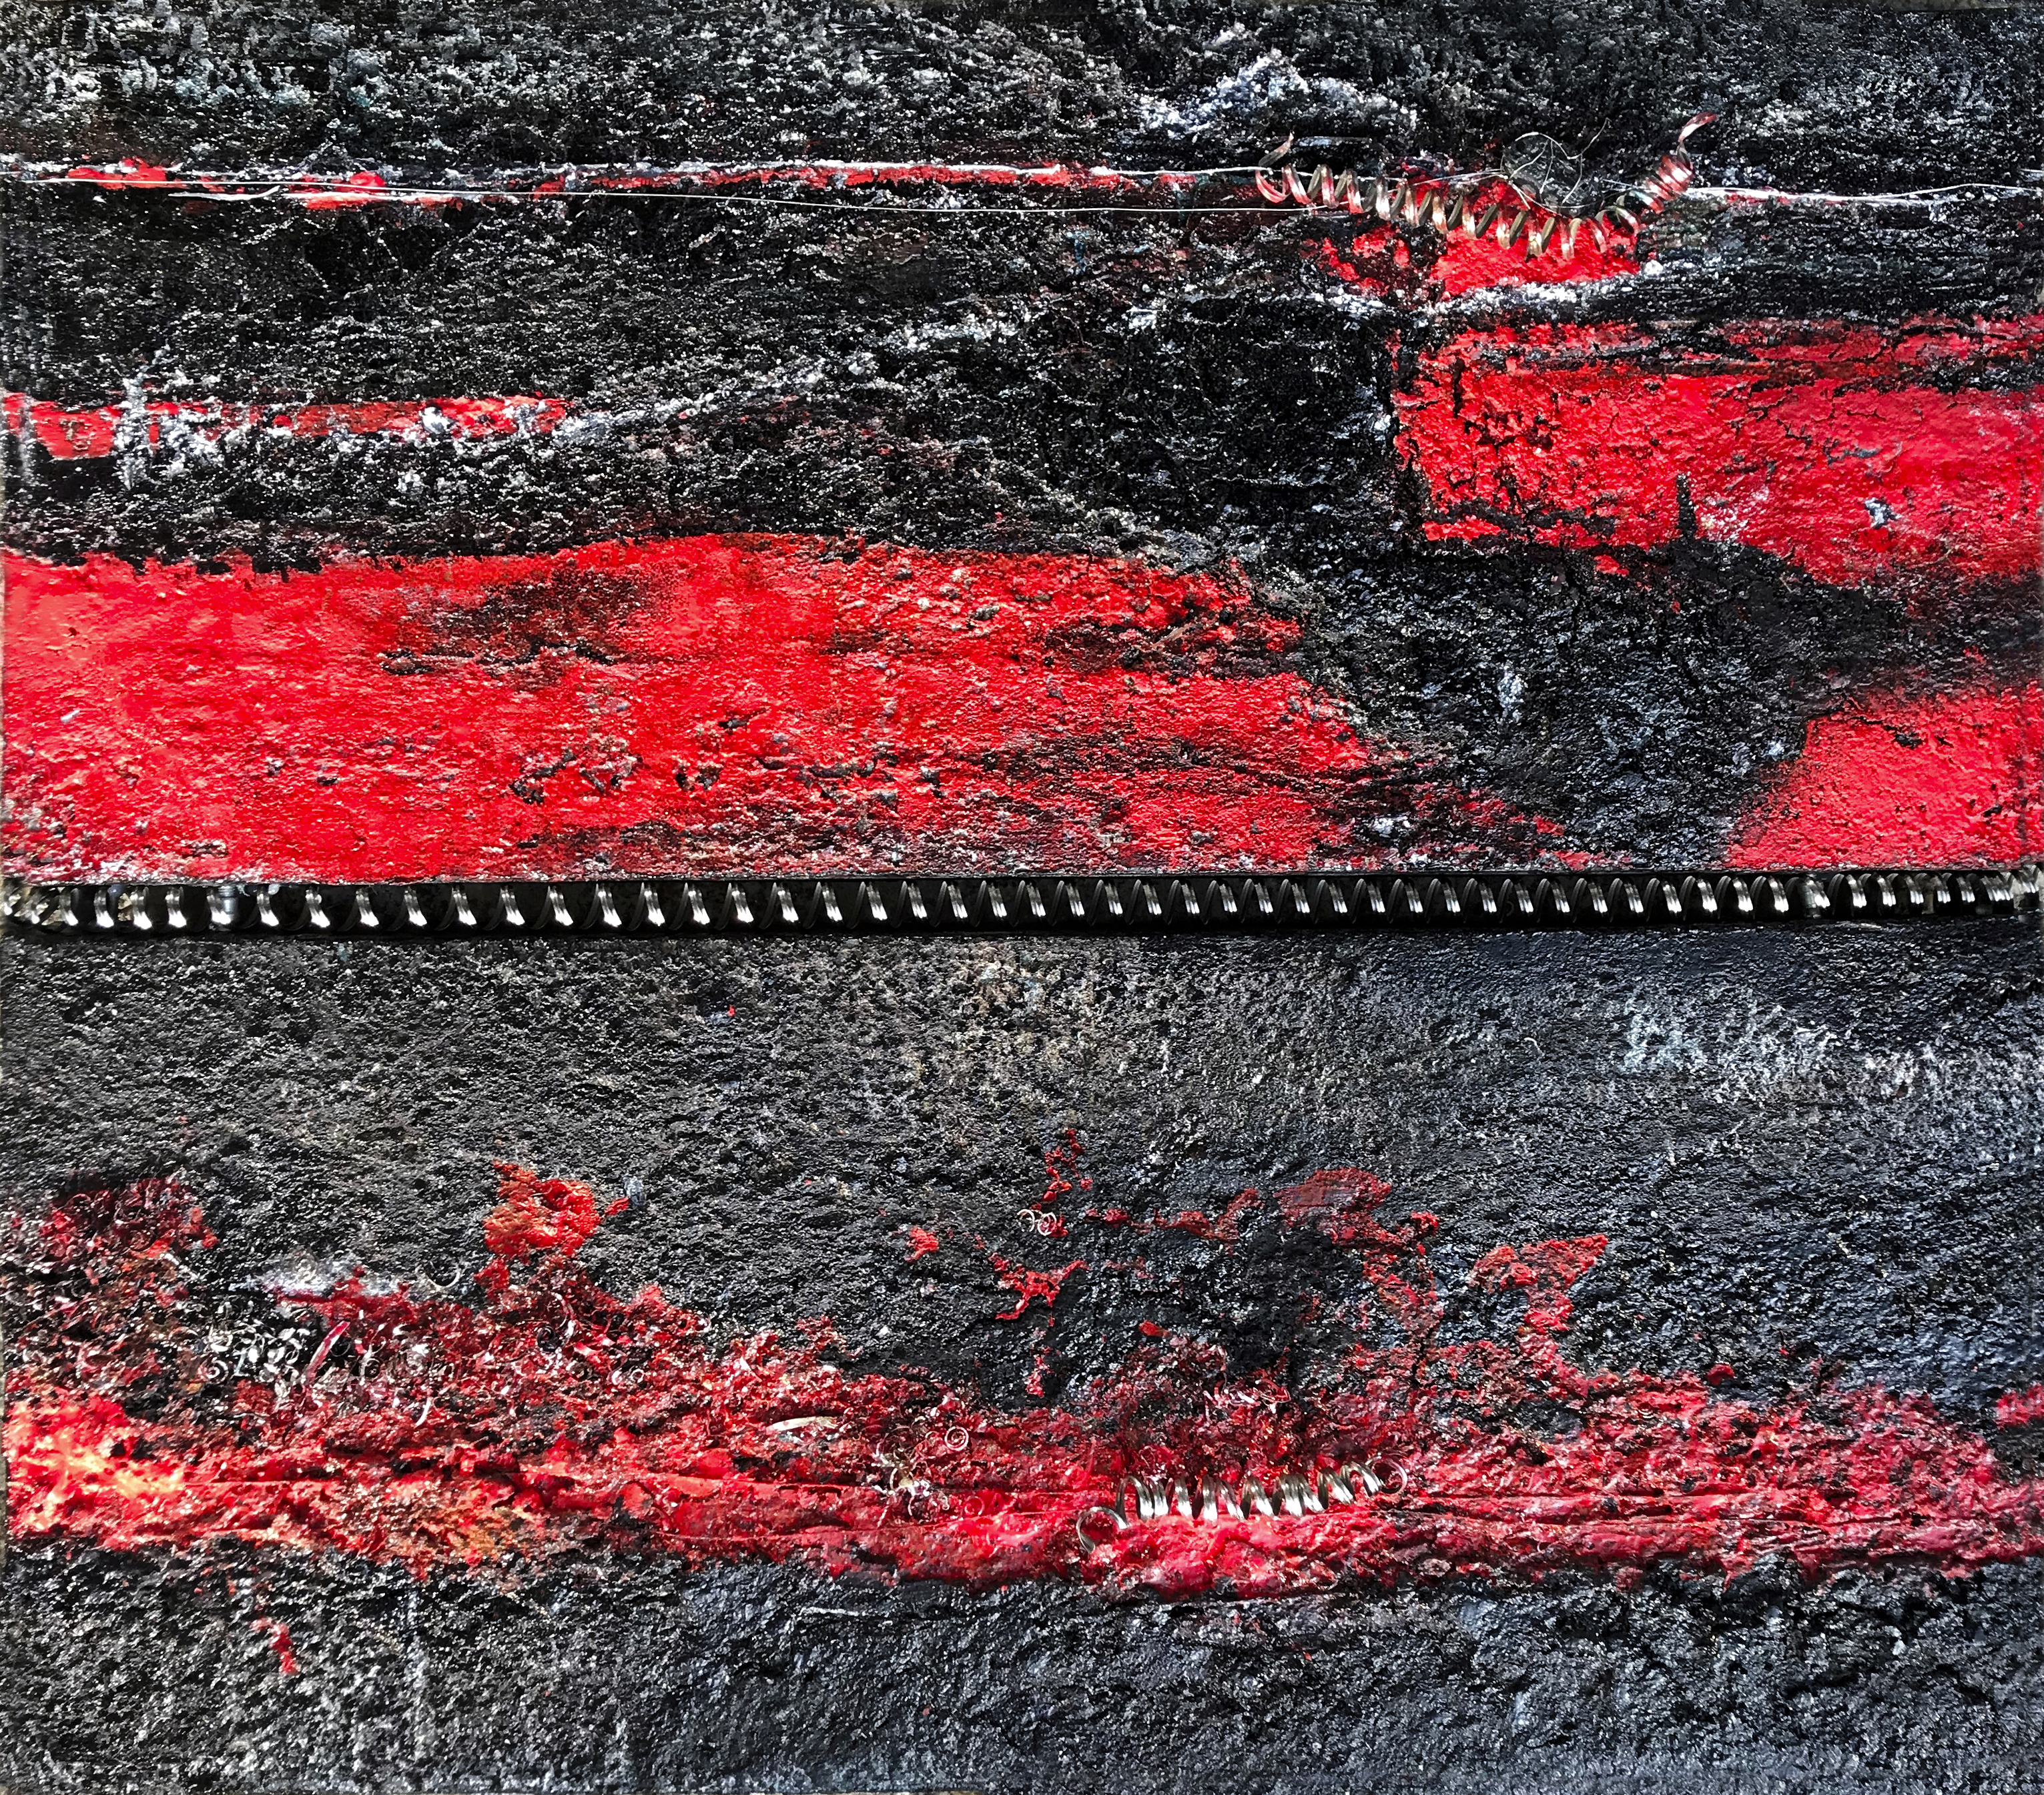 Teufelsspirale, Collage, 60 x 70 cm.